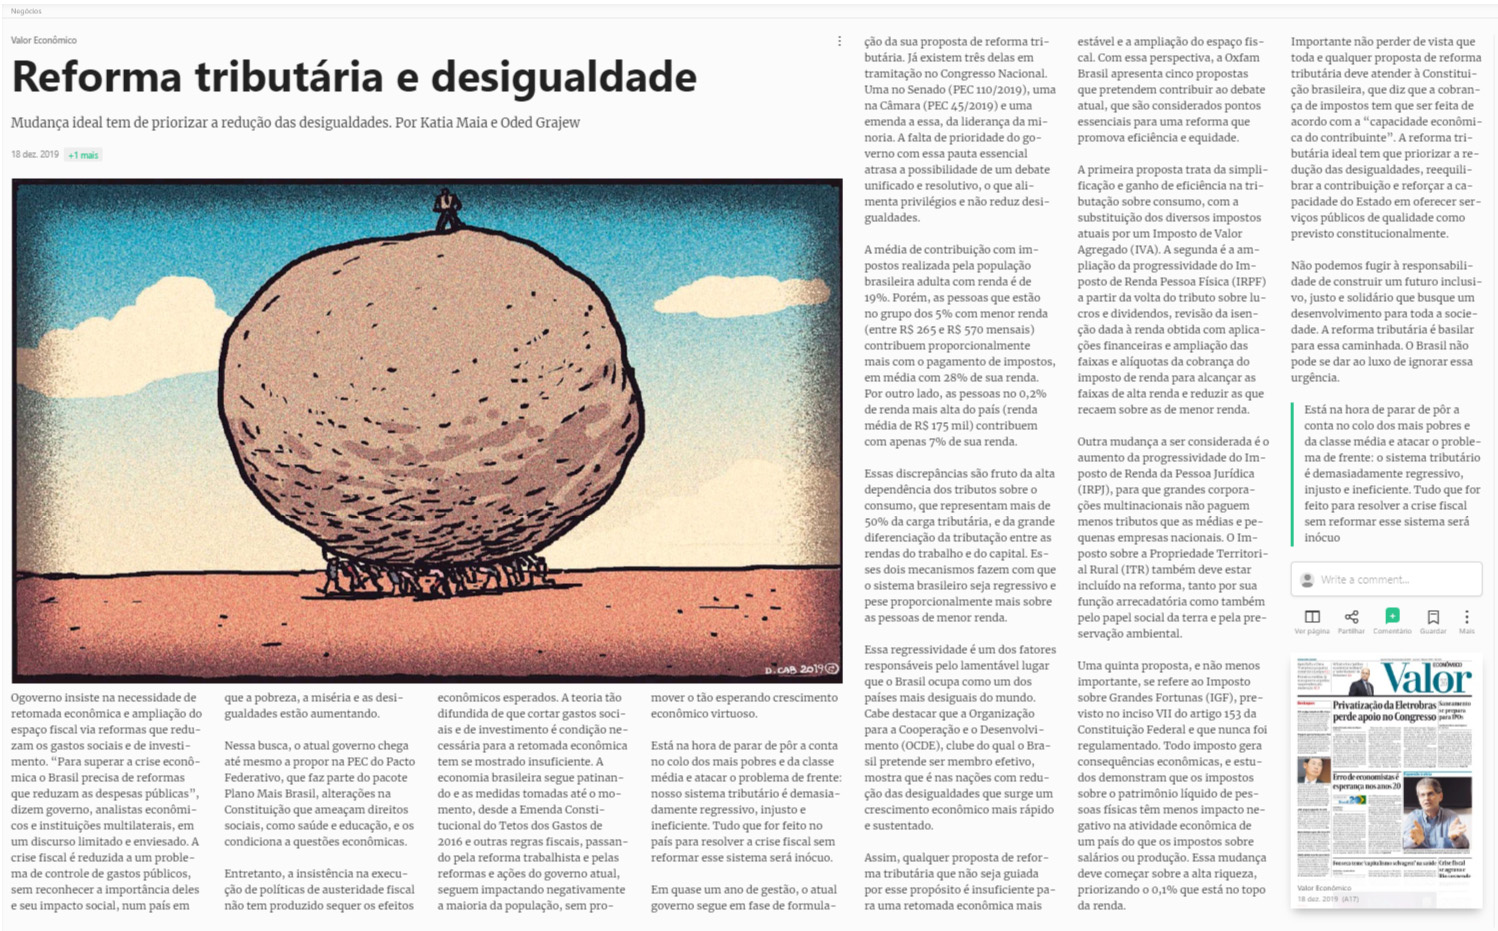 Artigo do jornal Valor Econômico sobre a reforma tributária e desigualdade no Brasil.